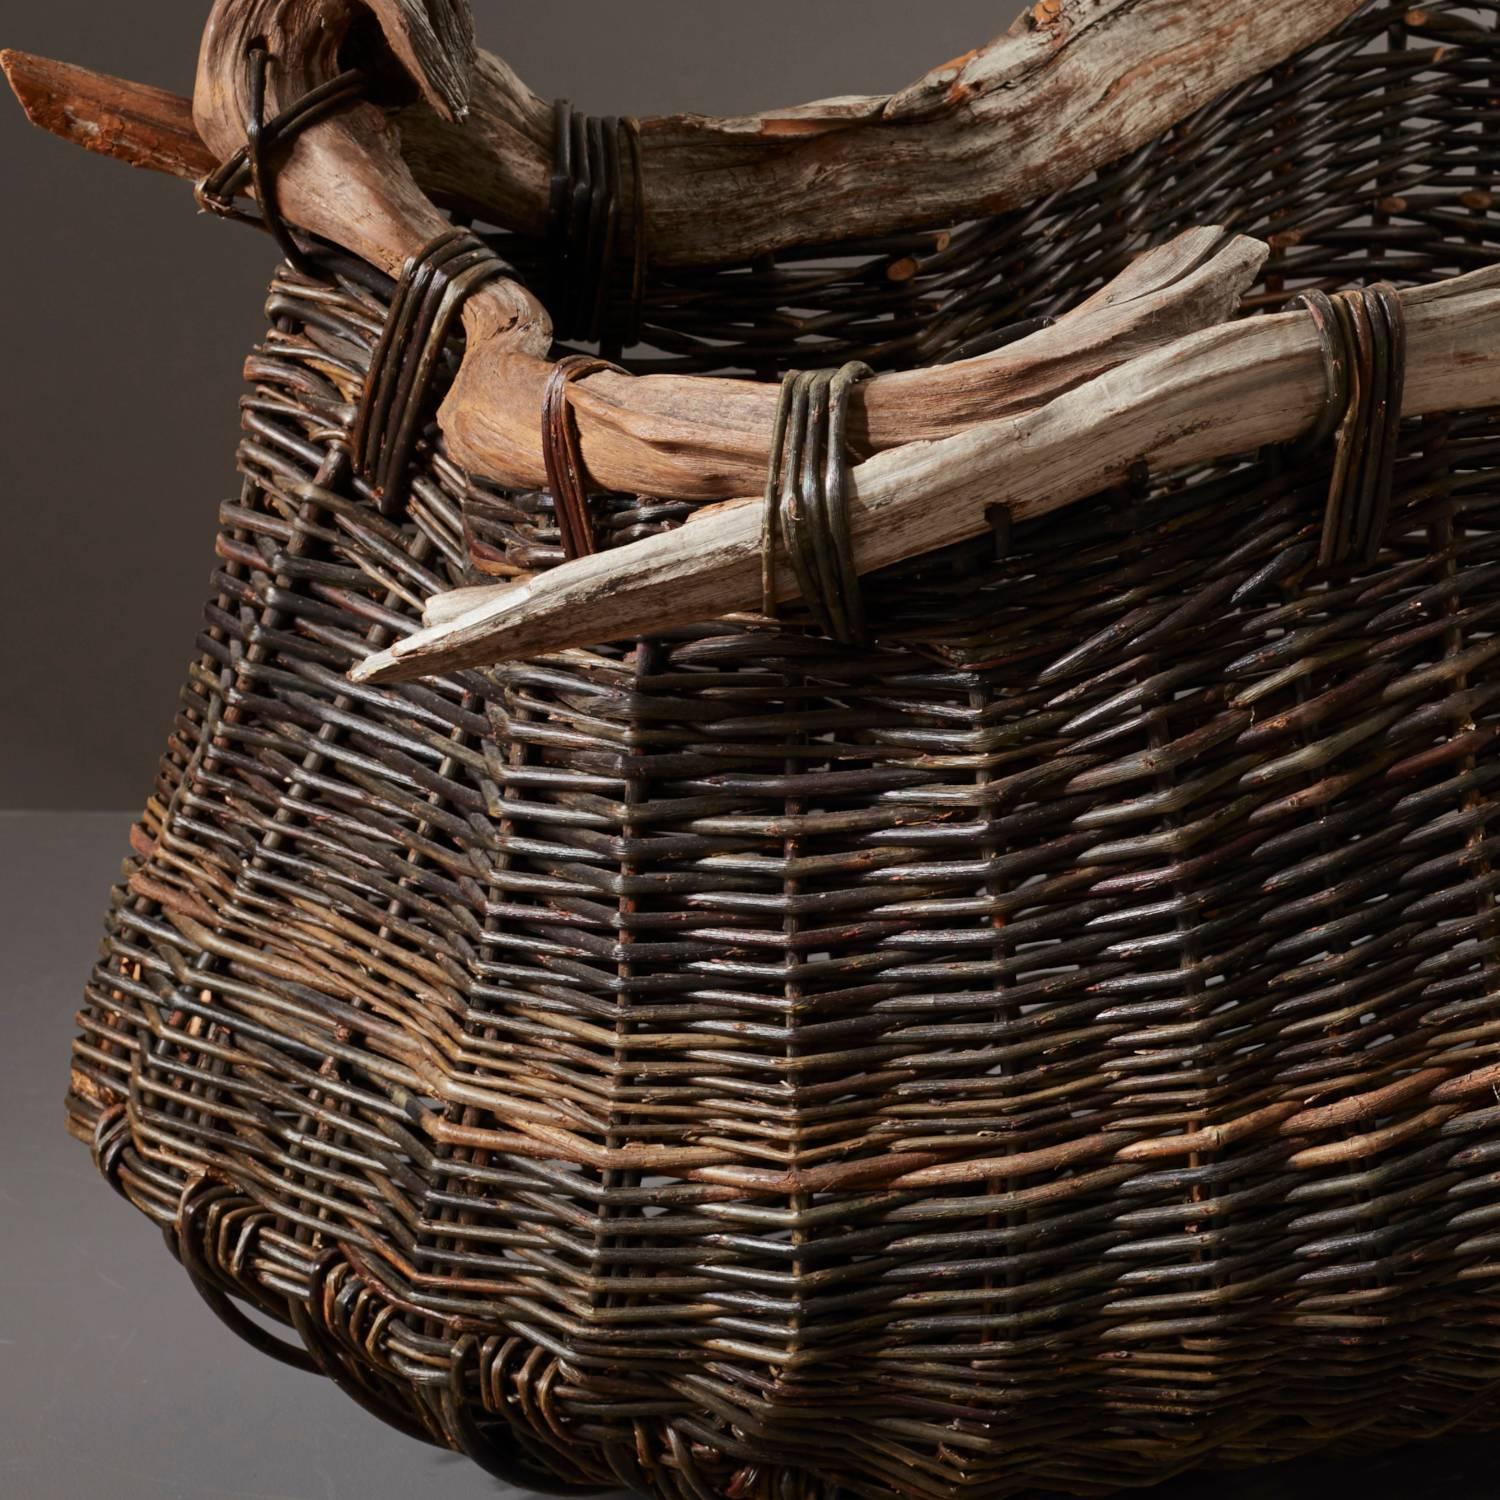 British Handmade Decorative Bog Wood Vessel Basket by Joe Hogan the New Craftsmen For Sale